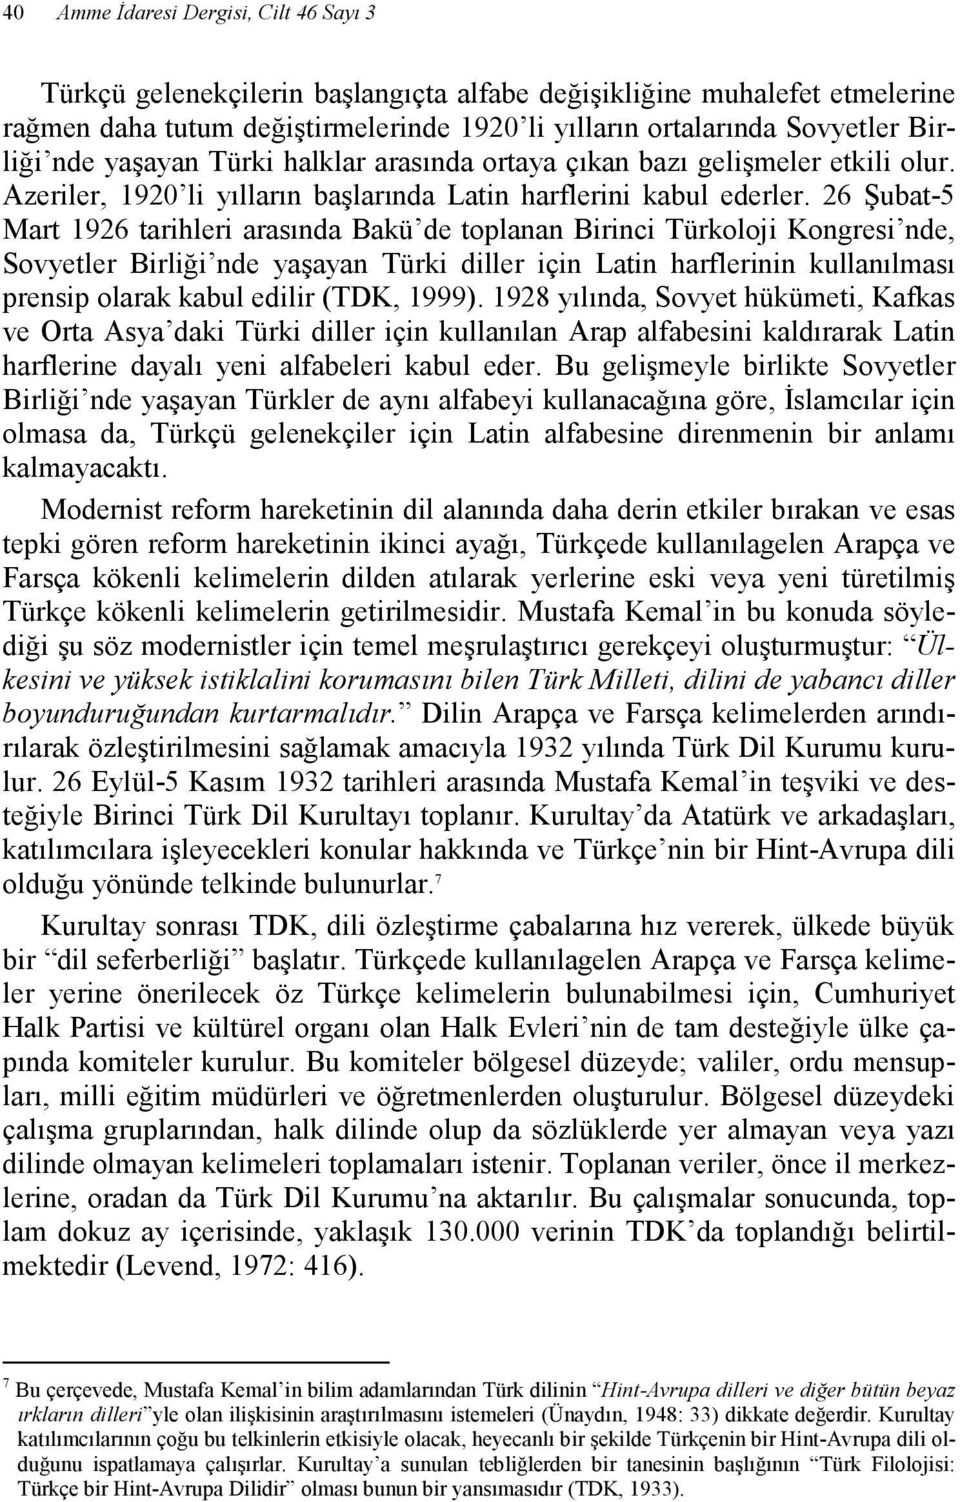 26 Şubat-5 Mart 1926 tarihleri arasında Bakü de toplanan Birinci Türkoloji Kongresi nde, Sovyetler Birliği nde yaşayan Türki diller için Latin harflerinin kullanılması prensip olarak kabul edilir